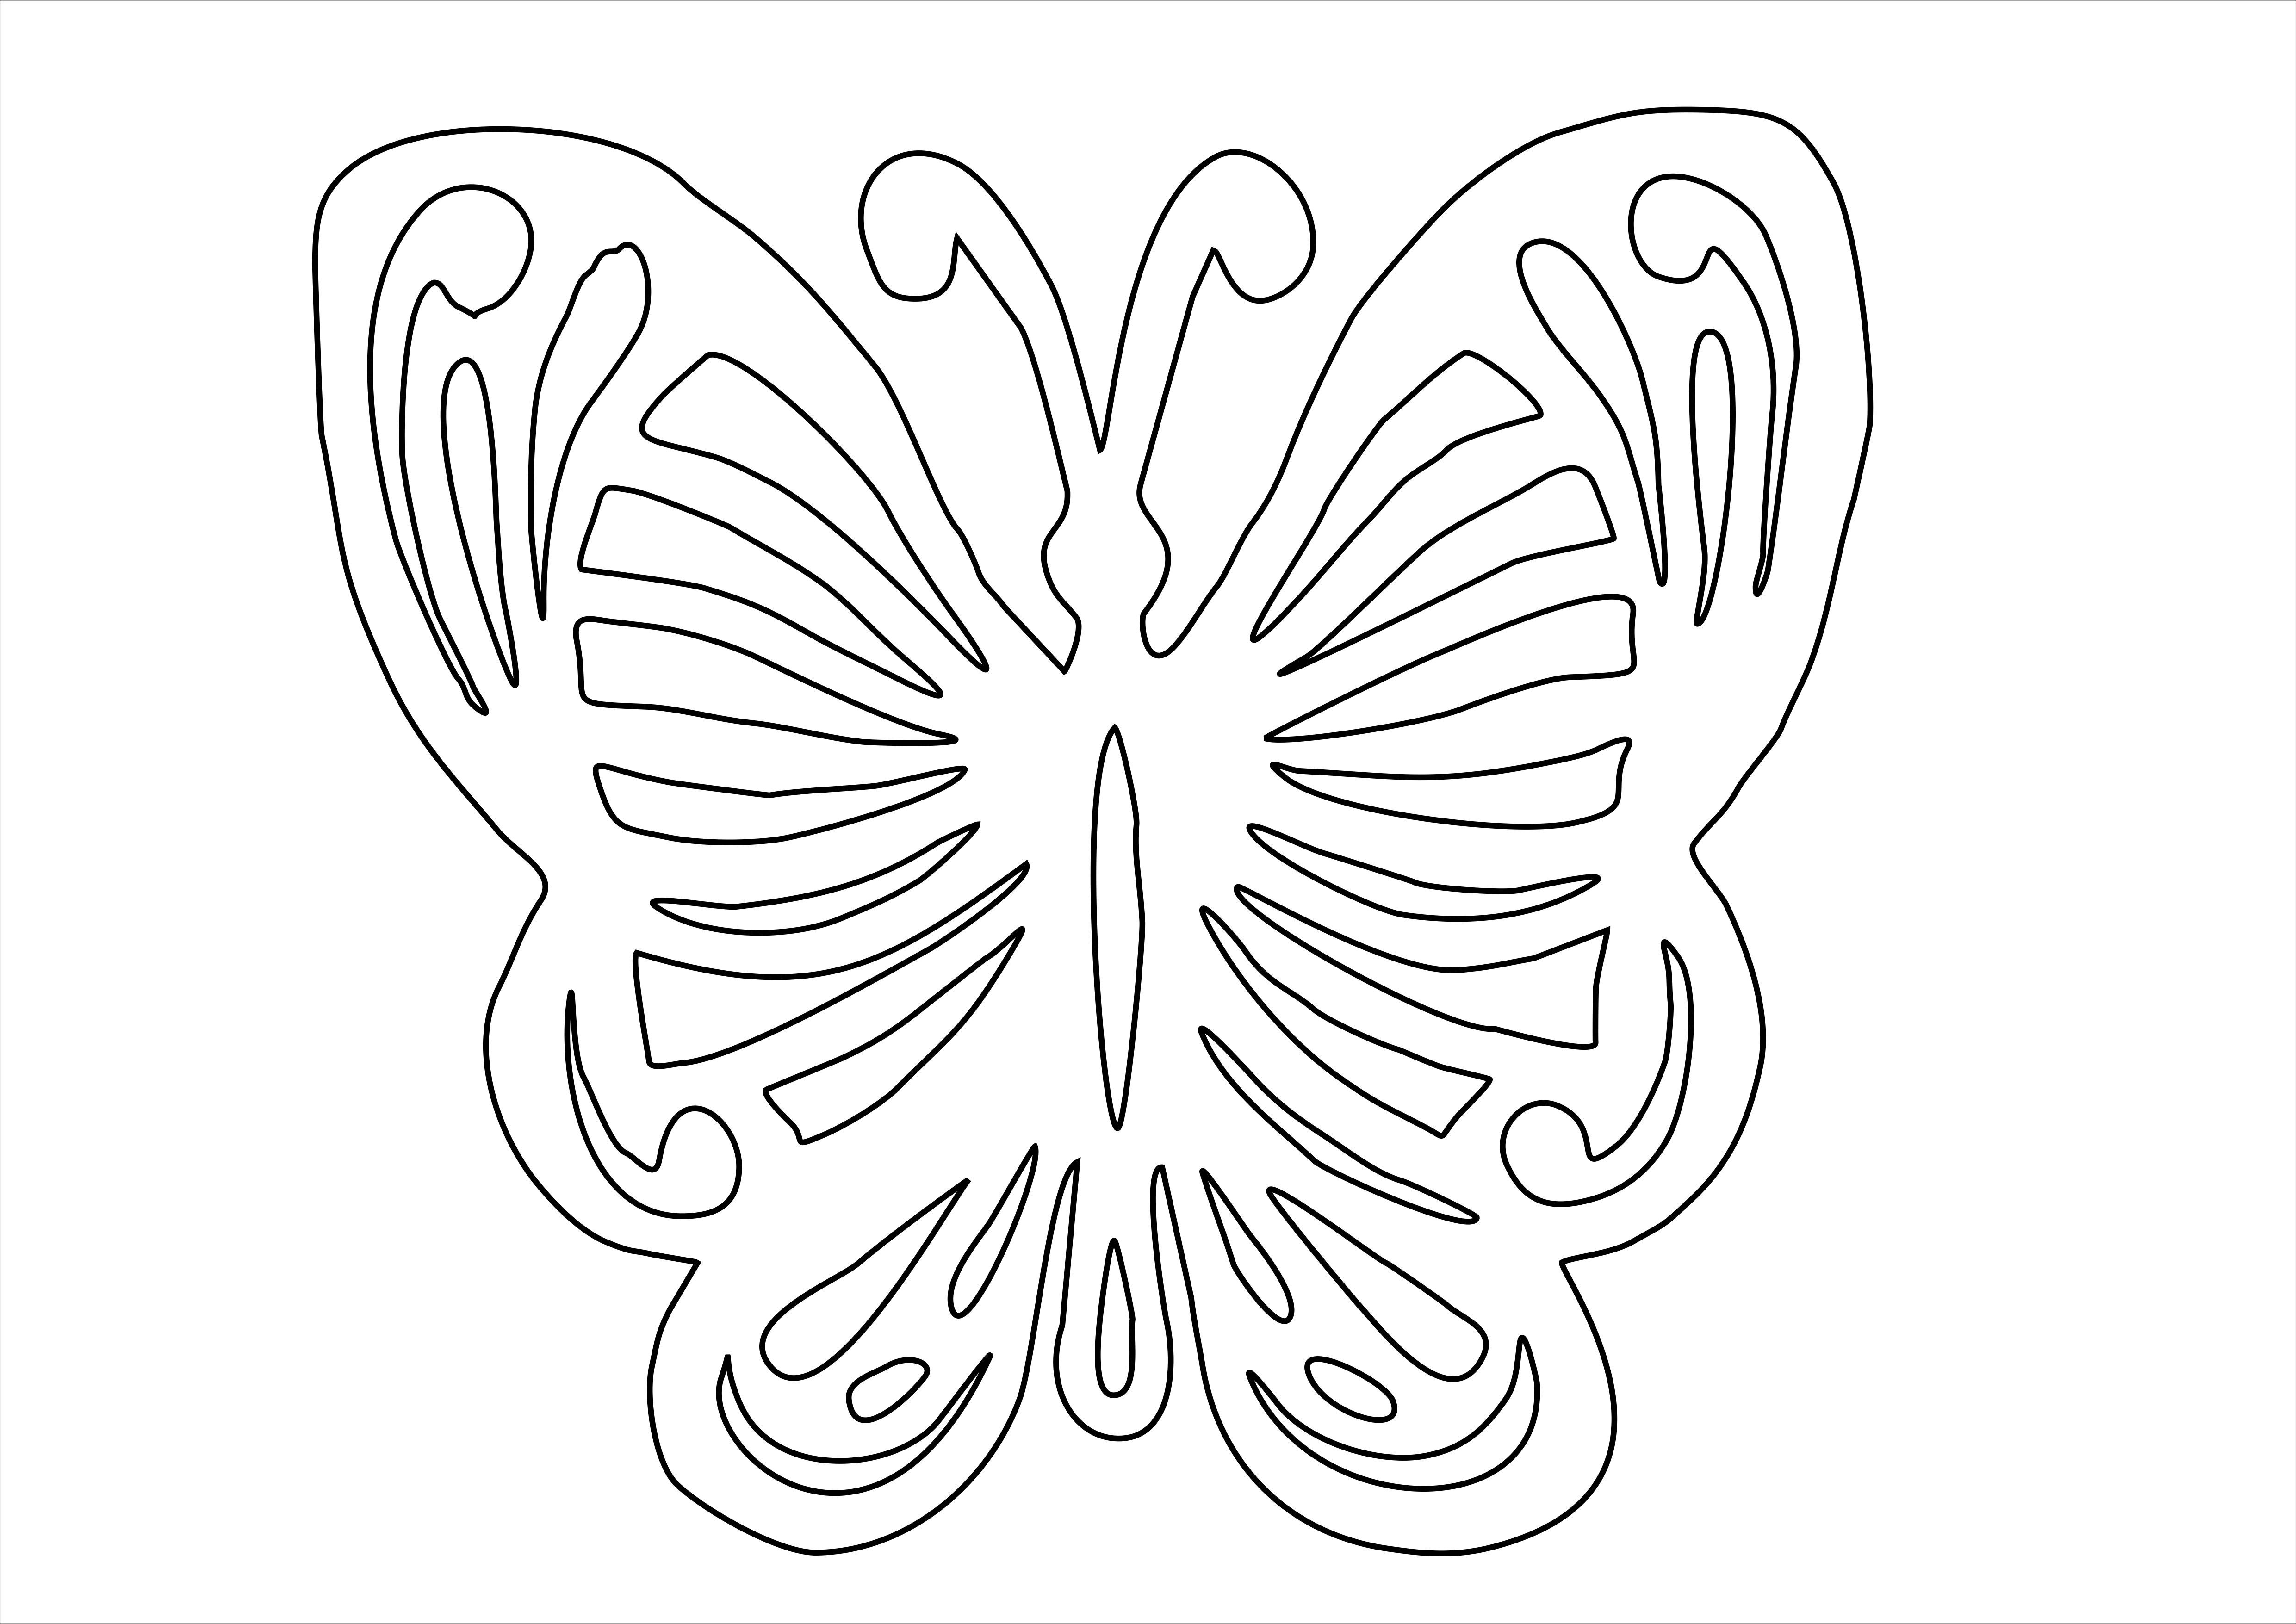 Большая вытыканка. Трафарет бабочки для вырезания. Бабочка шаблон для вырезания. Бабочка рисунок трафарет для вырезания. Бабочки шавблоныдлявырезания.